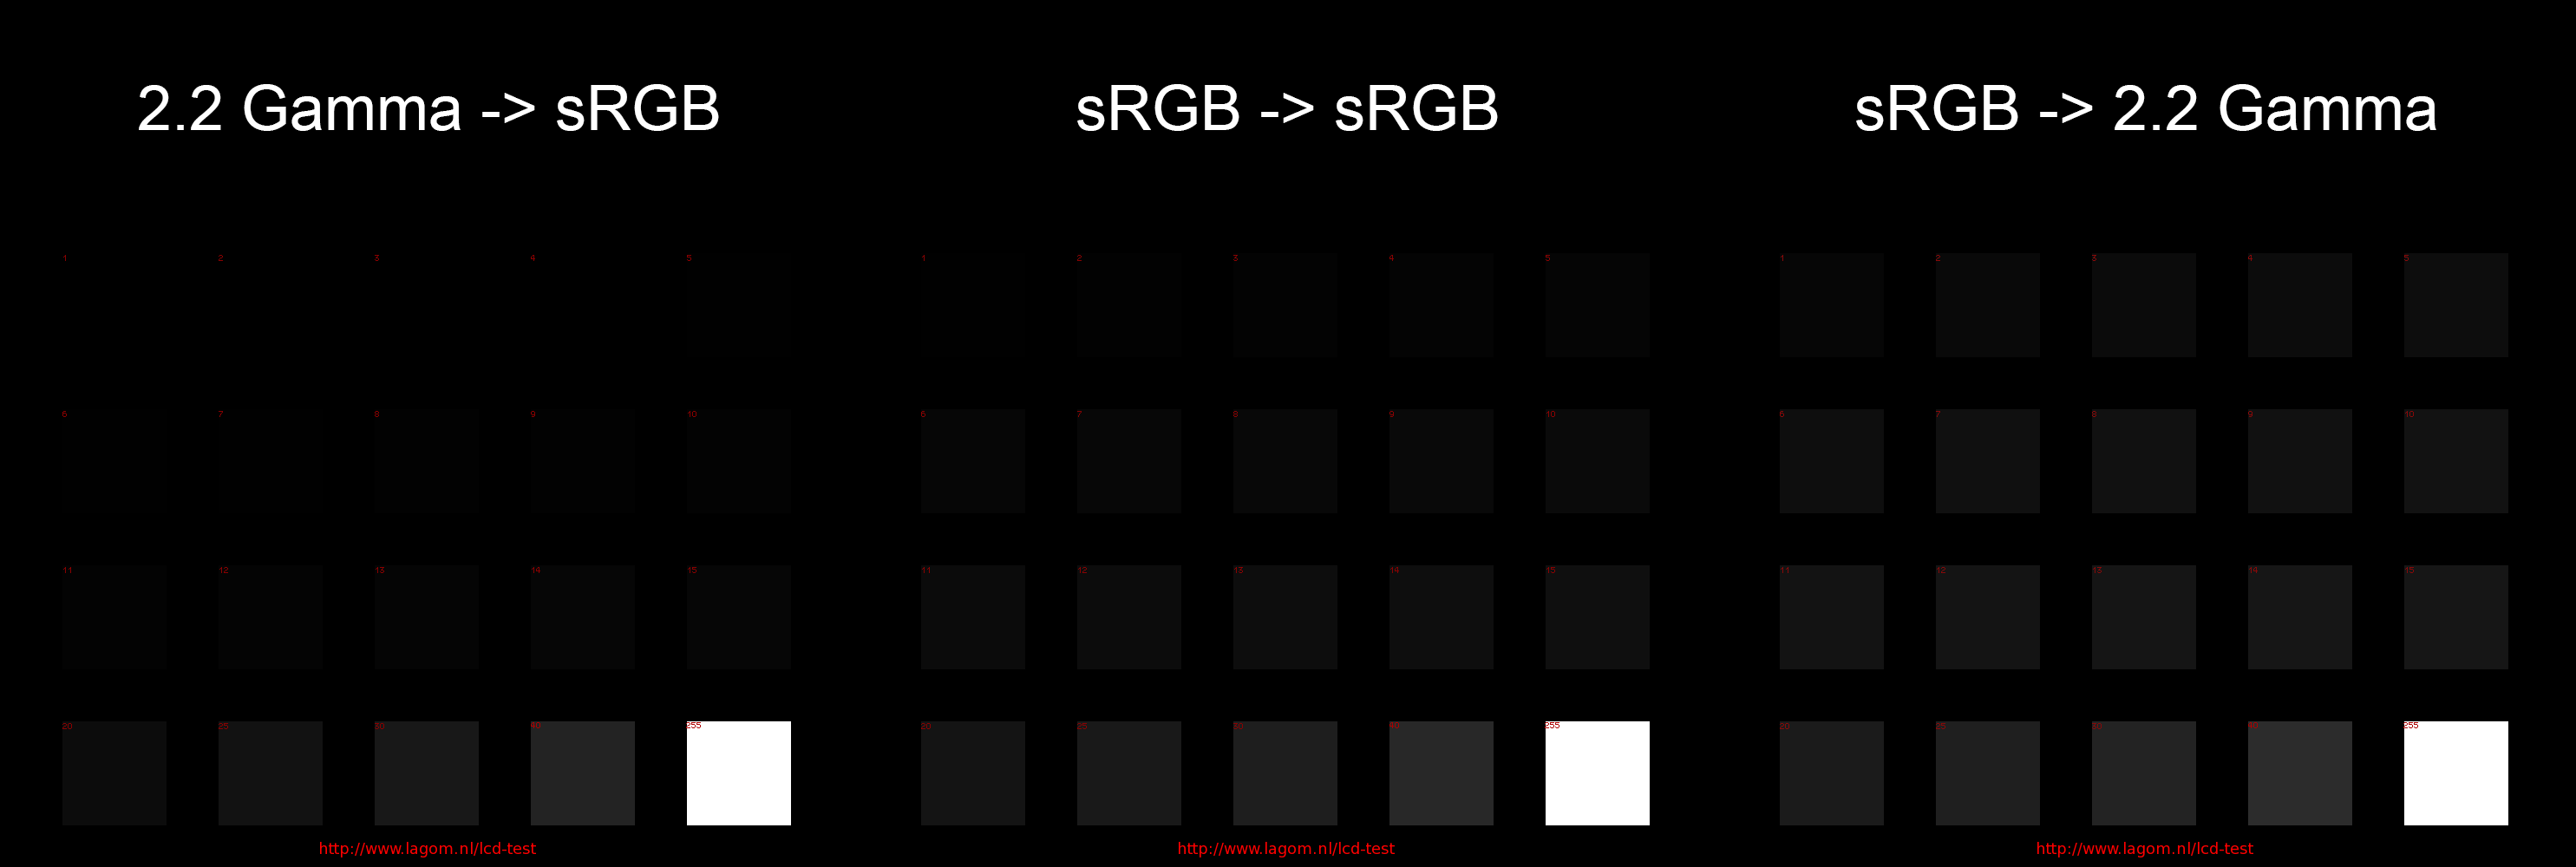 sRGB Gamma